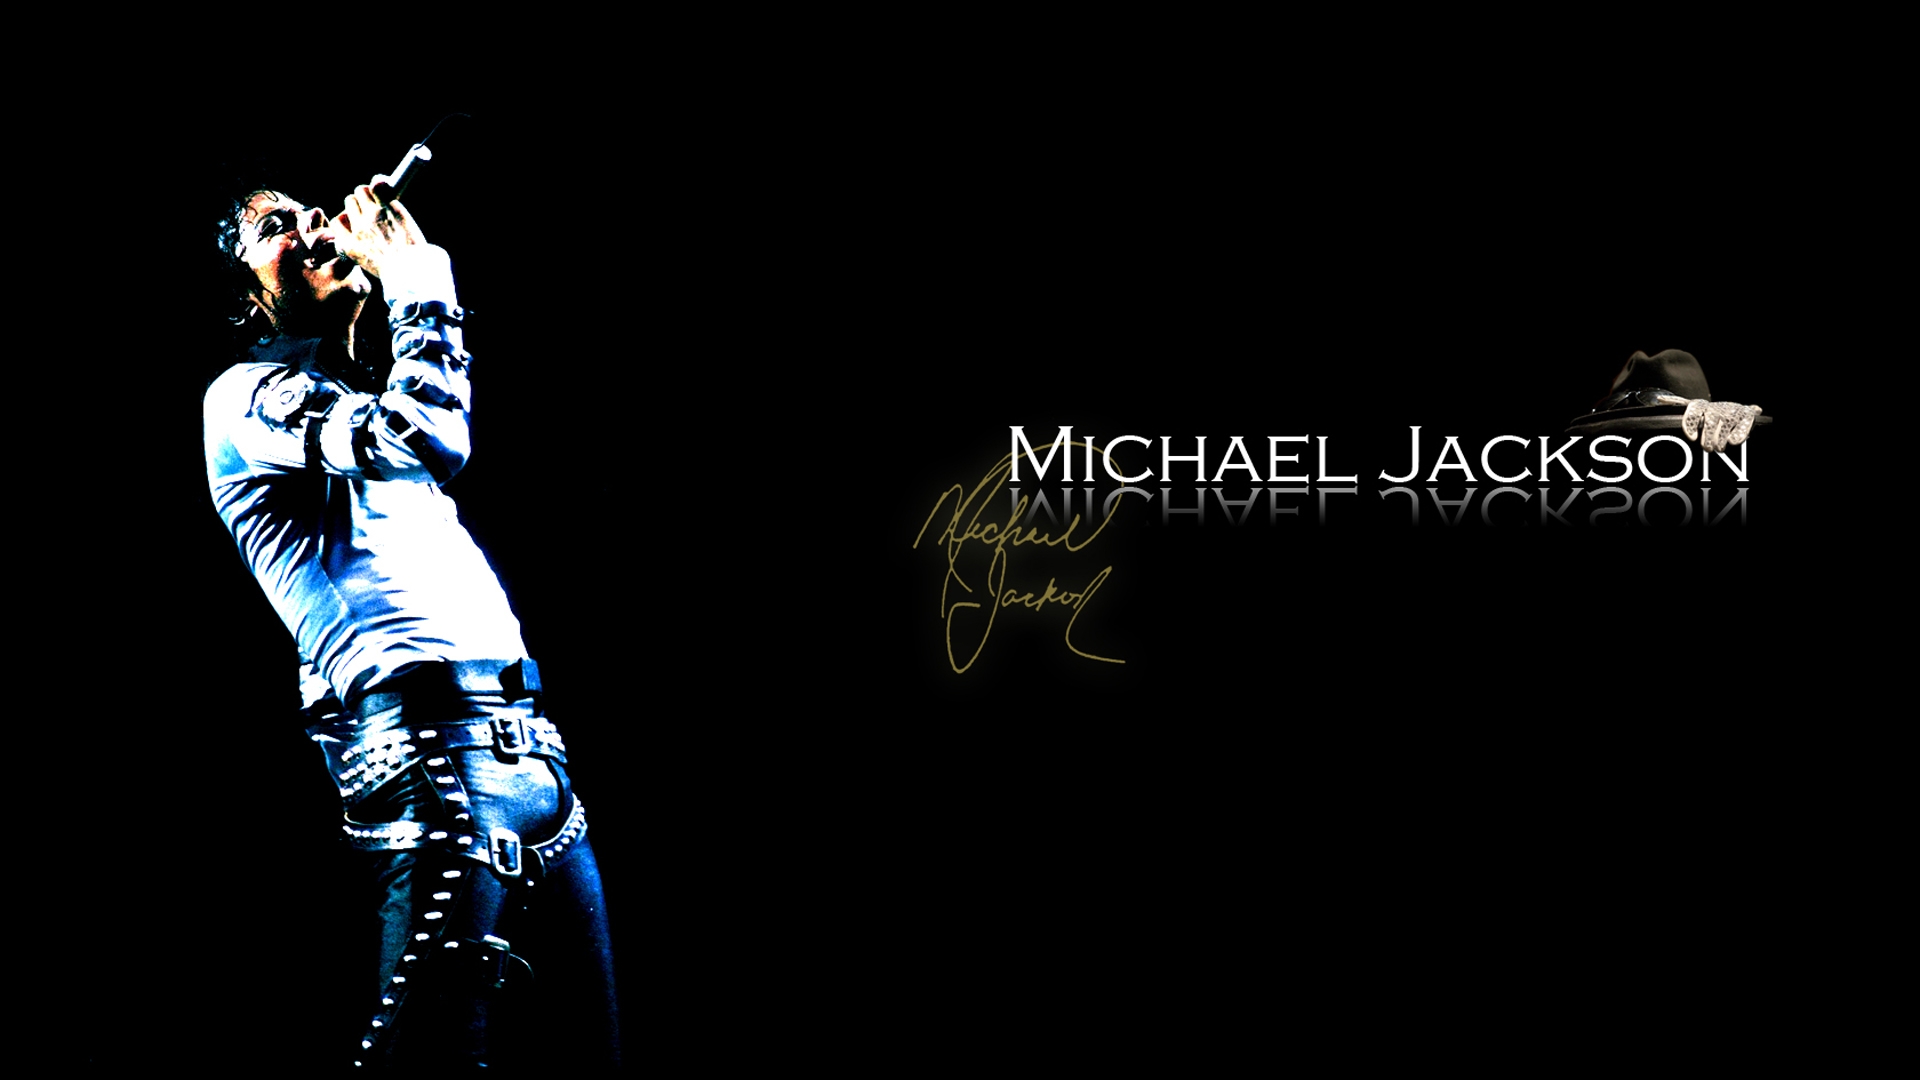 Michael Jackson The Legend Wallpaper Photo Letters